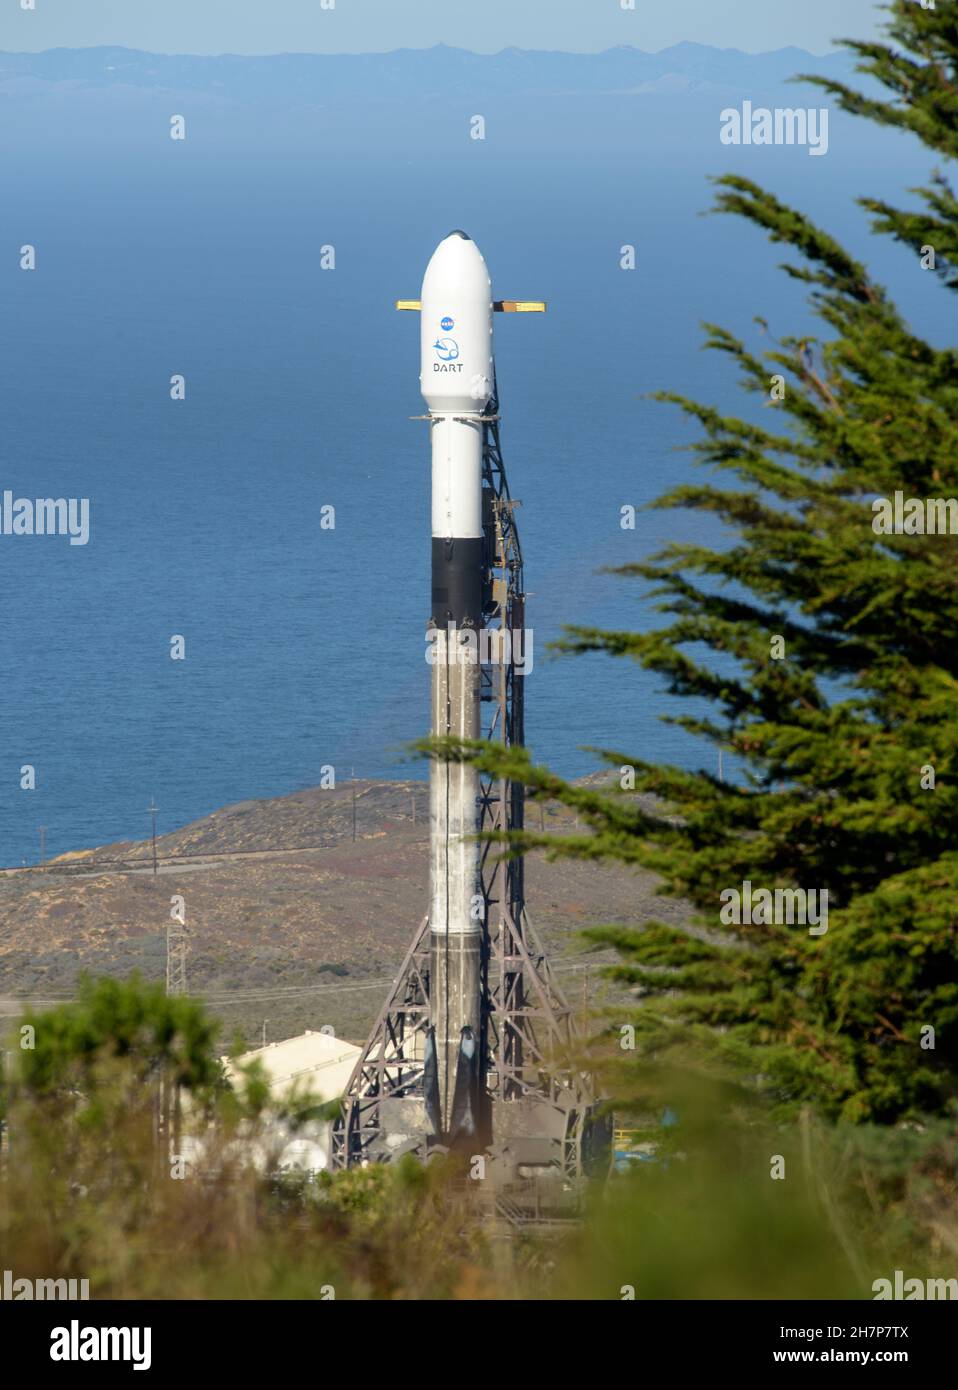 Vandenberg, Estados Unidos de América. 23rd Nov, 2021. Vandenberg, Estados Unidos de América. 23 de noviembre de 2021. Un cohete de refuerzo SpaceX Falcon 9 que lleva la misión de pruebas de defensa planetaria de la NASA, Double Asteroide Redirection Test, se prepara para el despegue del Space Launch Complex-4 en la Base de la Fuerza Espacial Vandenberg el 23 de noviembre de 2021 en Vandenberg, California. La nave espacial DART está diseñada para estrellarse en un asteroide mientras viaja a una velocidad de 15.000 millas por hora para alterar el camino para prevenir el impacto en la Tierra. Crédito: Bill Ingalls/NASA/Alamy Live News Foto de stock